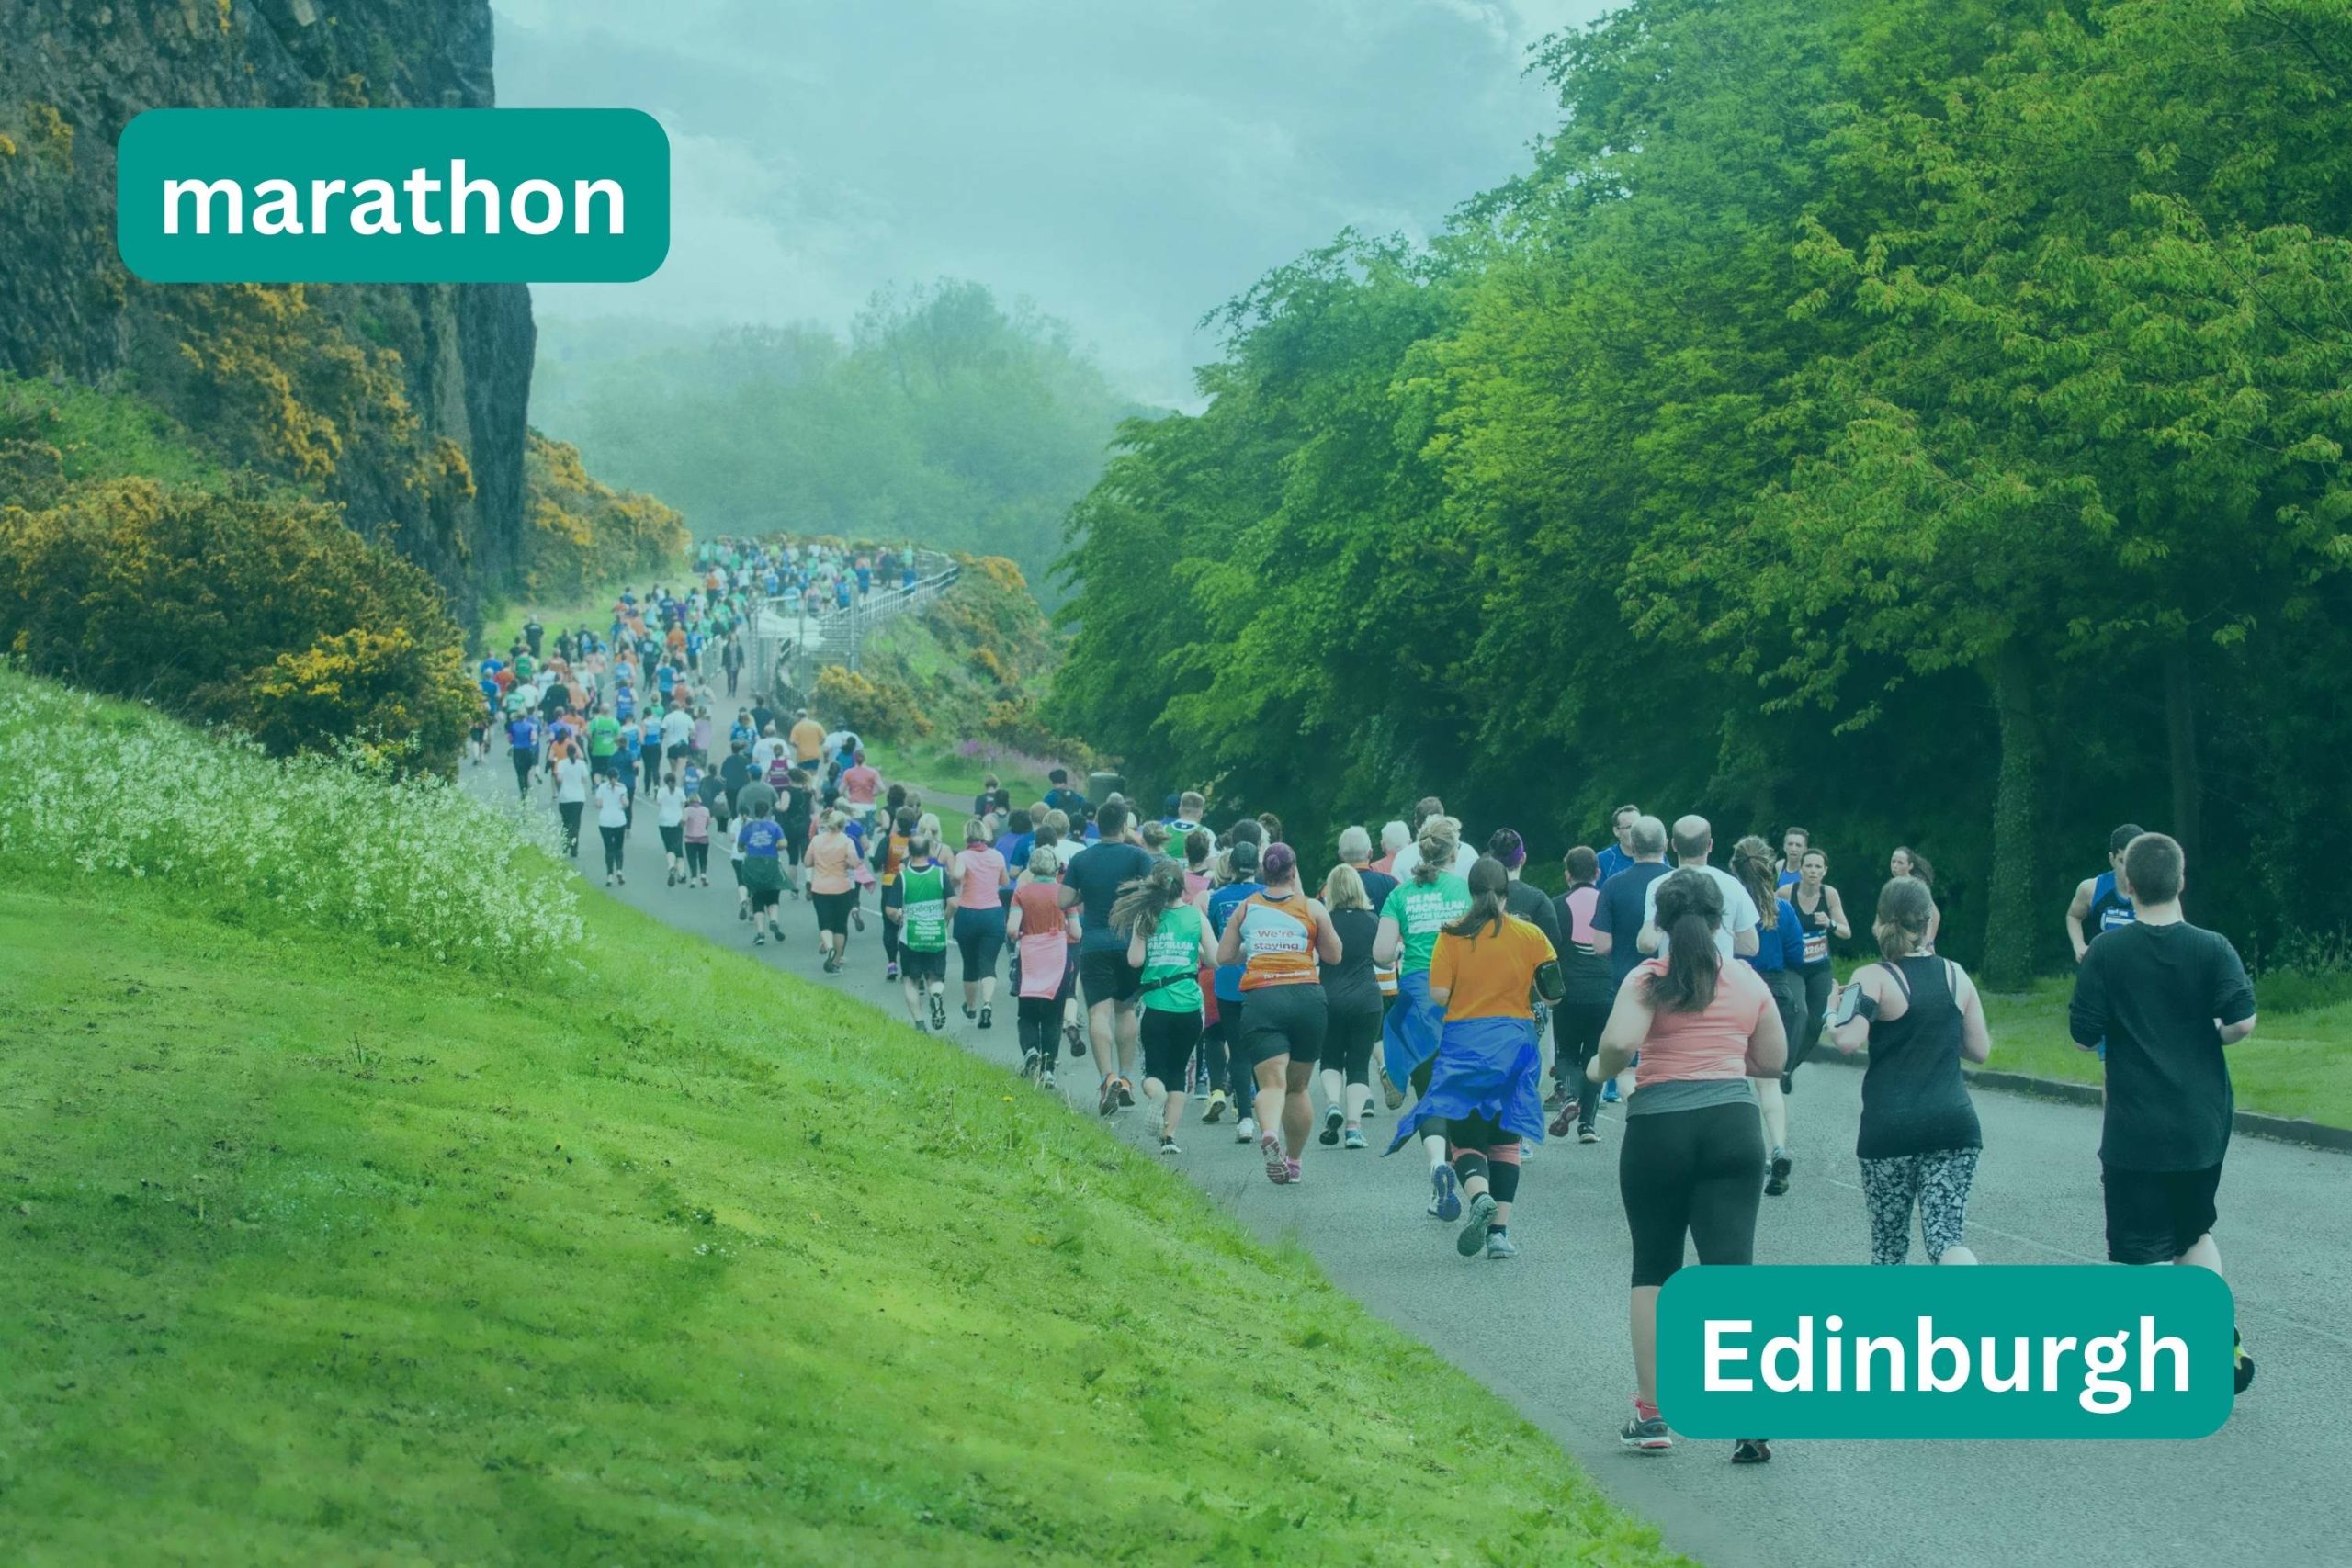 crowd running the edinburgh marathon